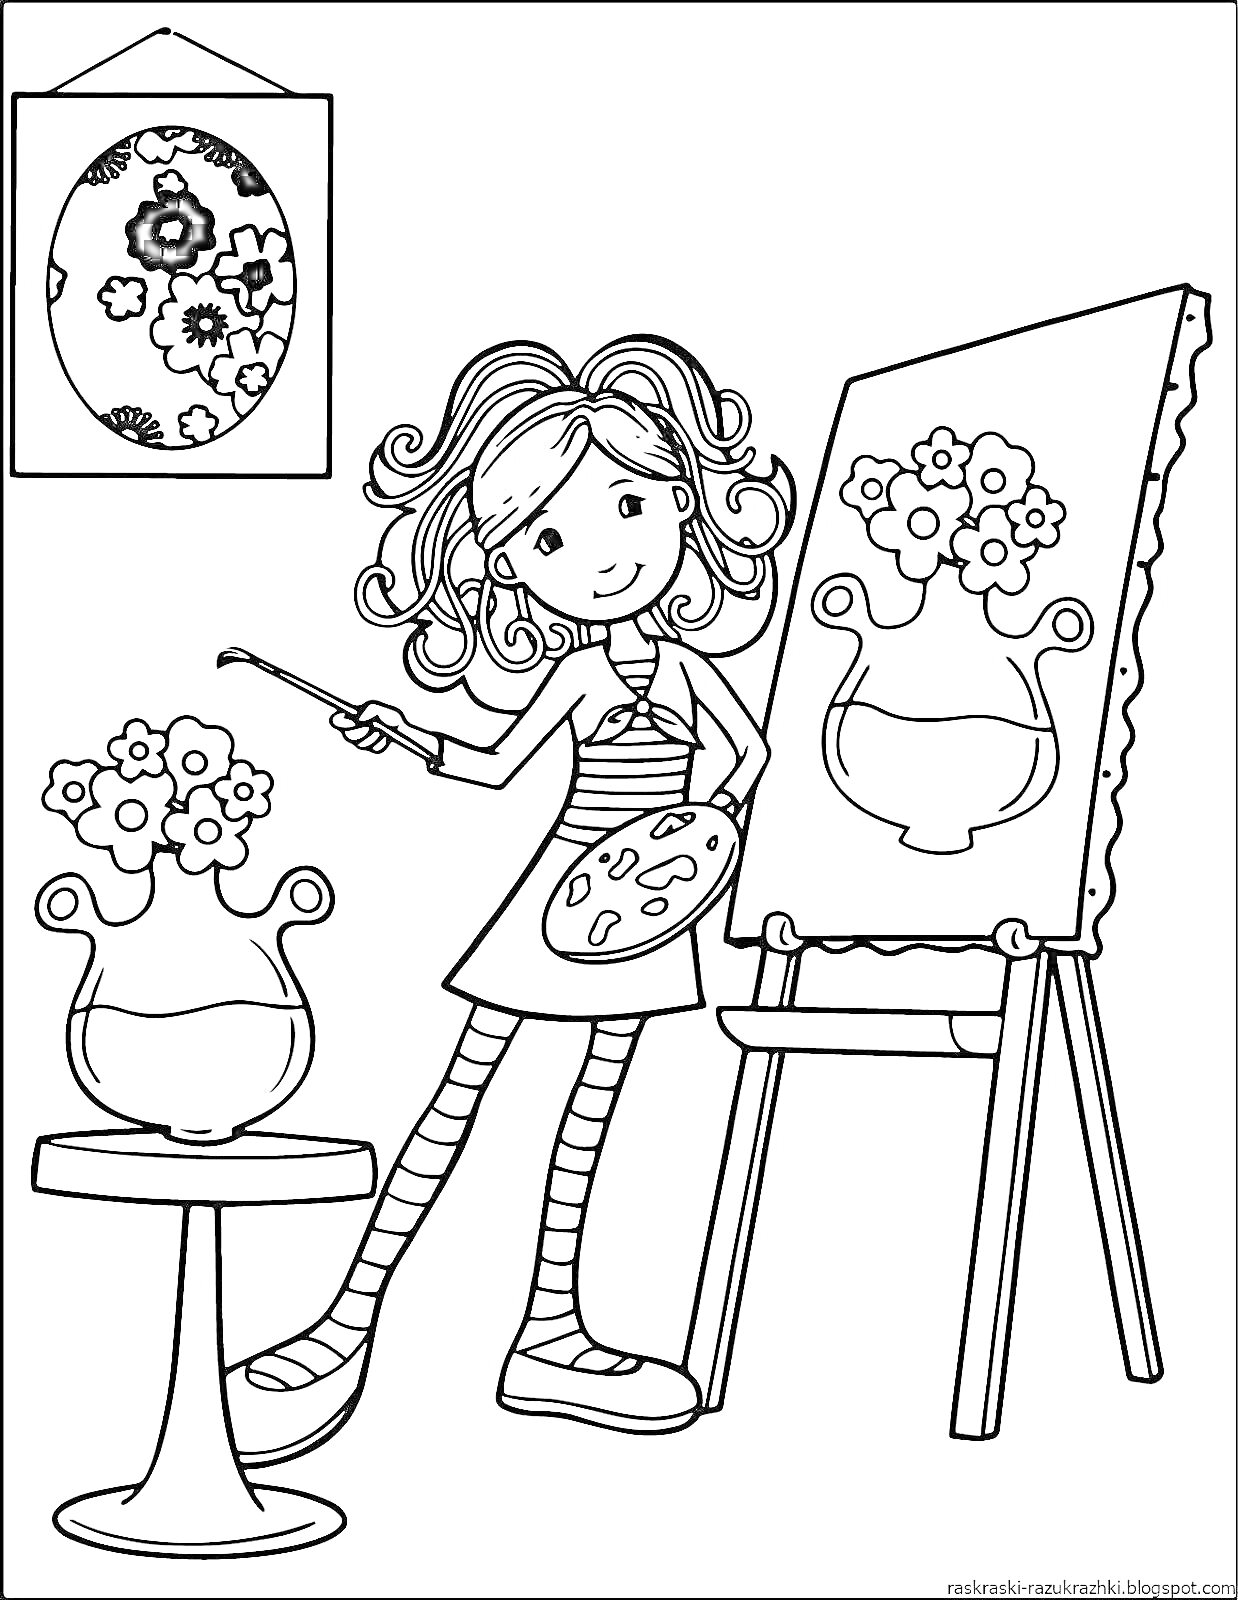 Раскраска Девочка рисует цветы в вазе на мольберте, рядом стоит ваза с цветами, на стене висит картина с рисунком яйца с цветами